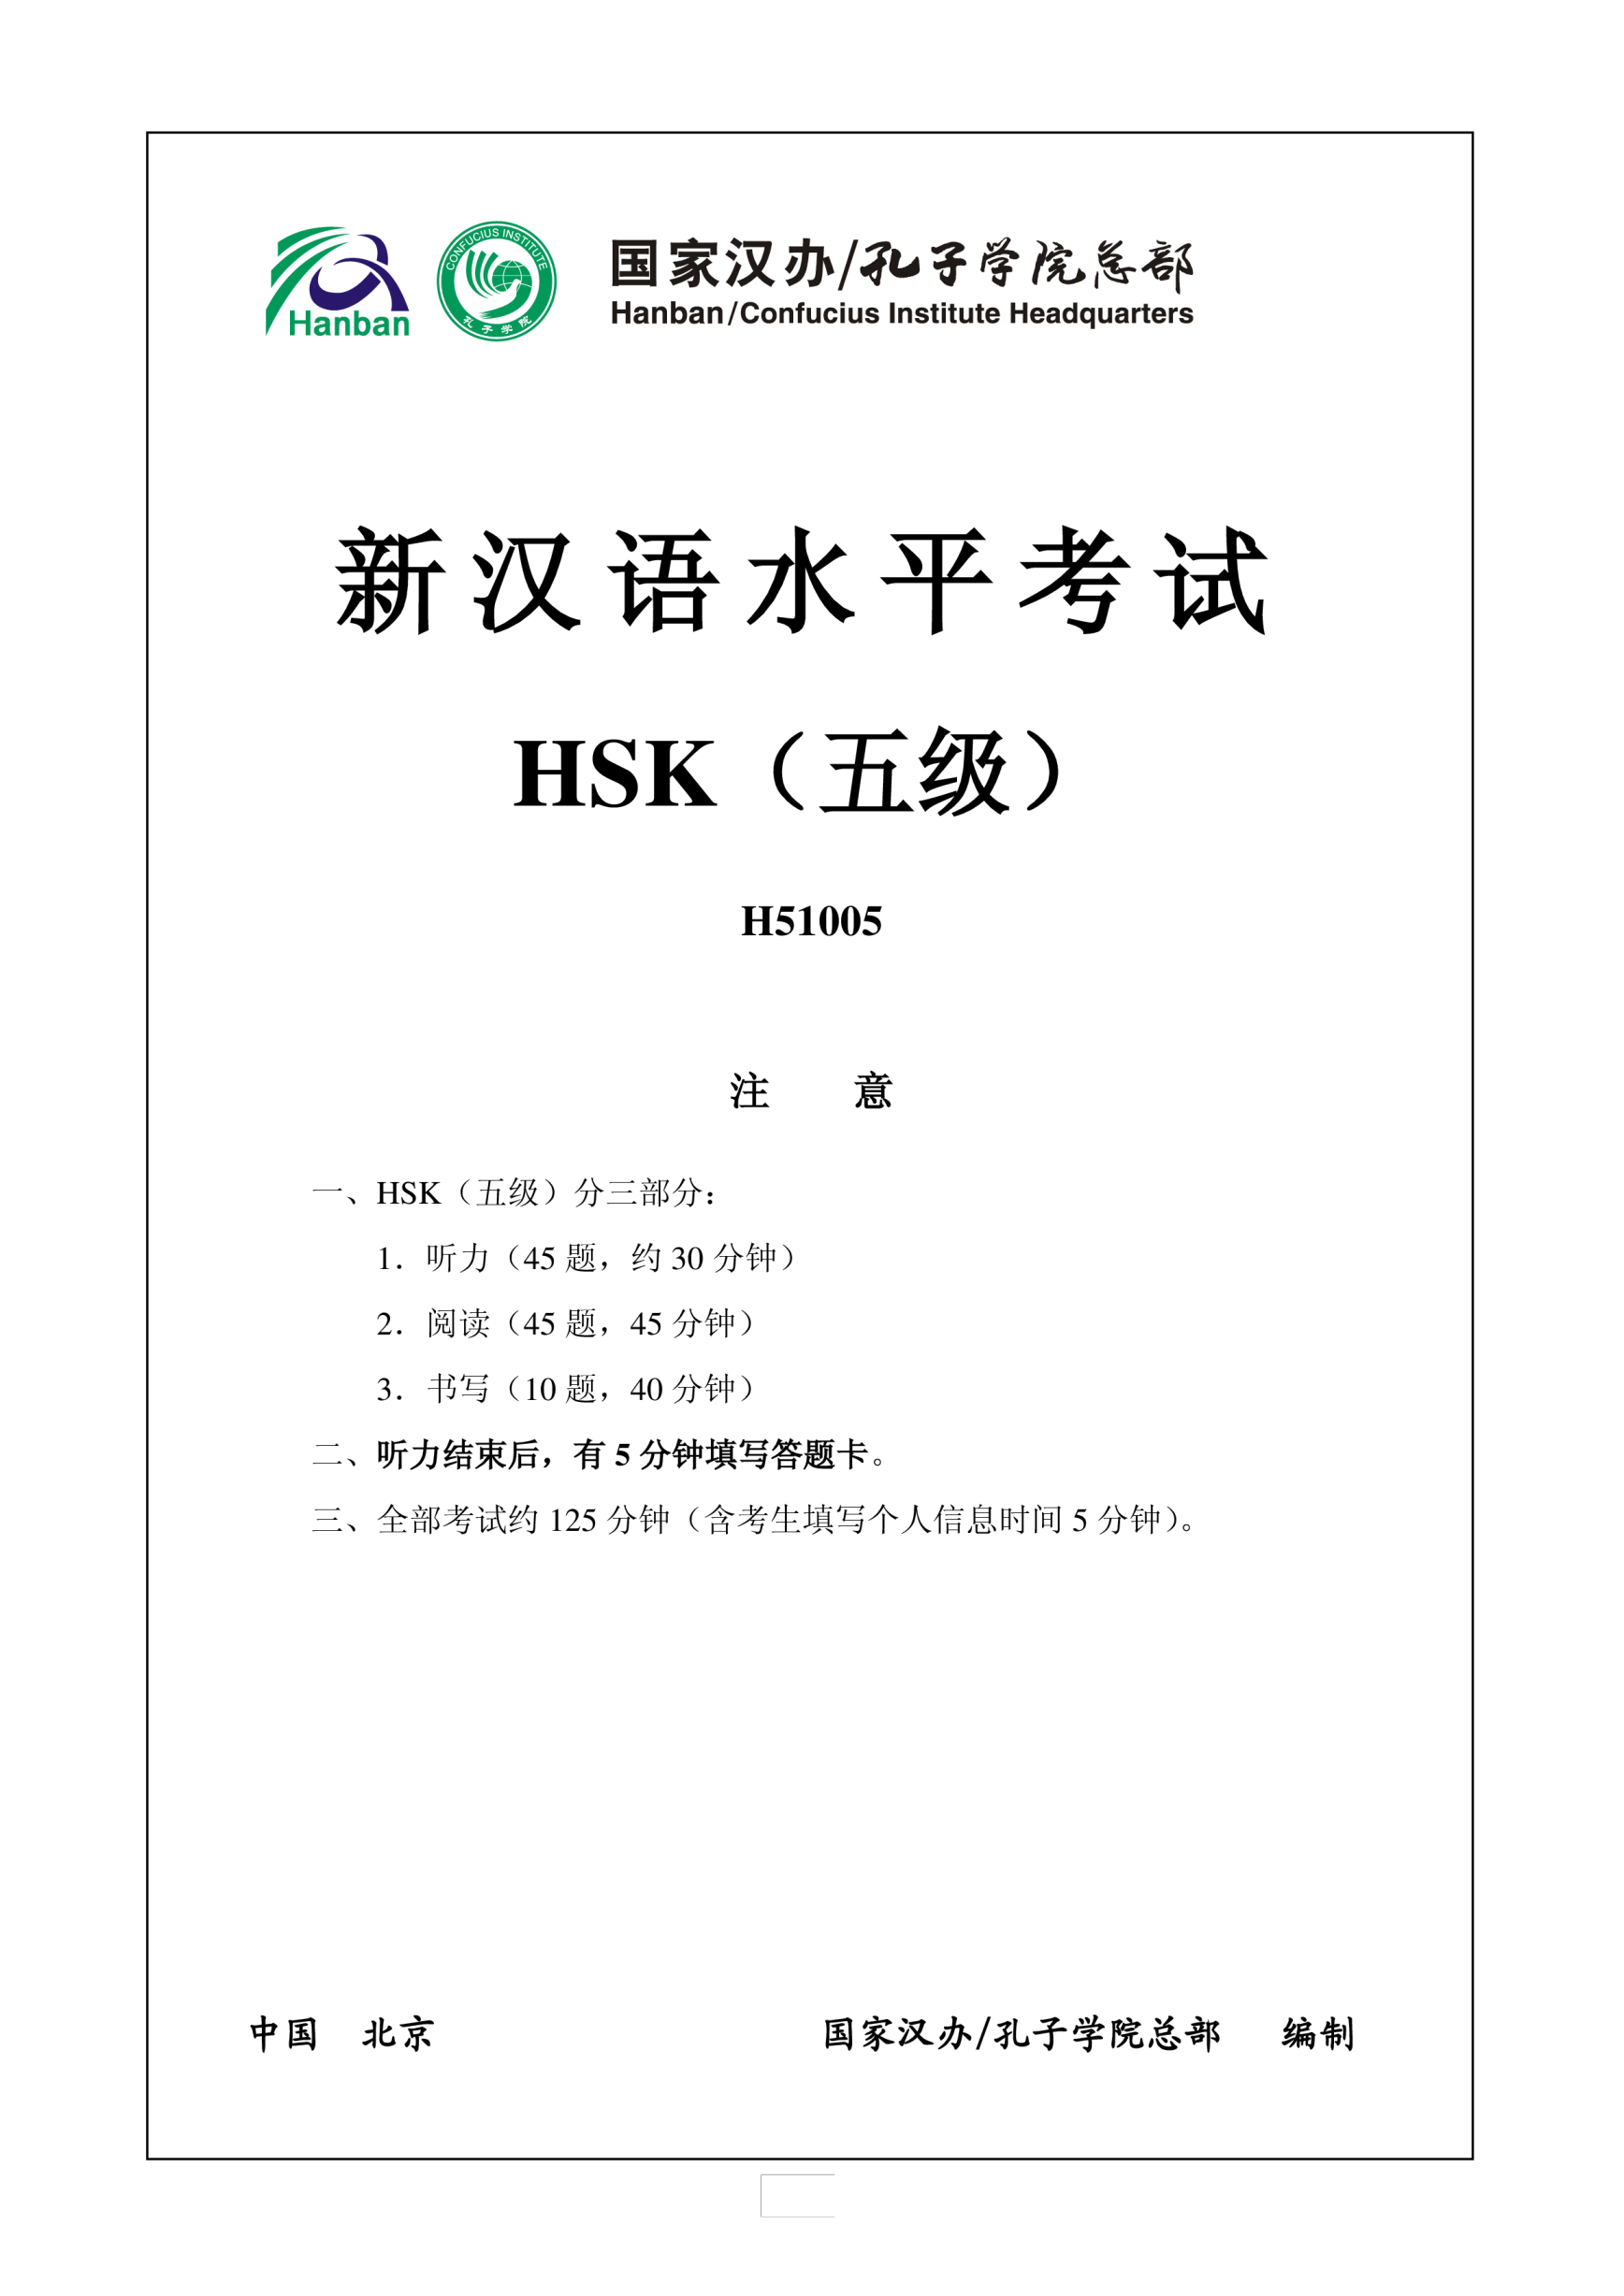 Vorschaubild der VorlageHSK5 H51005 Chinese Exam incl Audio and Answers